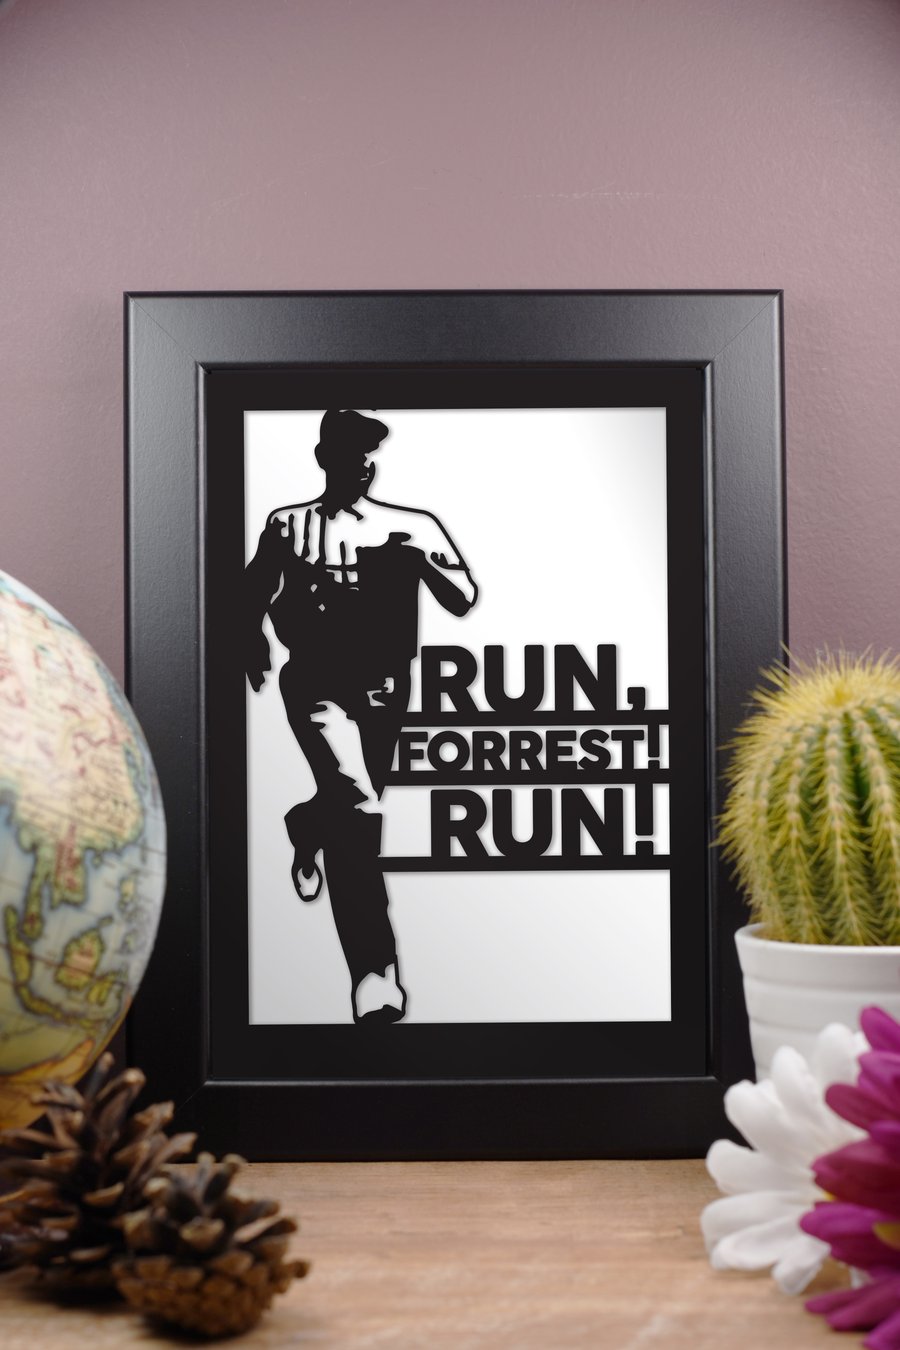 Framed Tom Hanks Film Artwork - Forrest Gump Run Forrest Run! - 13cm x 18cm